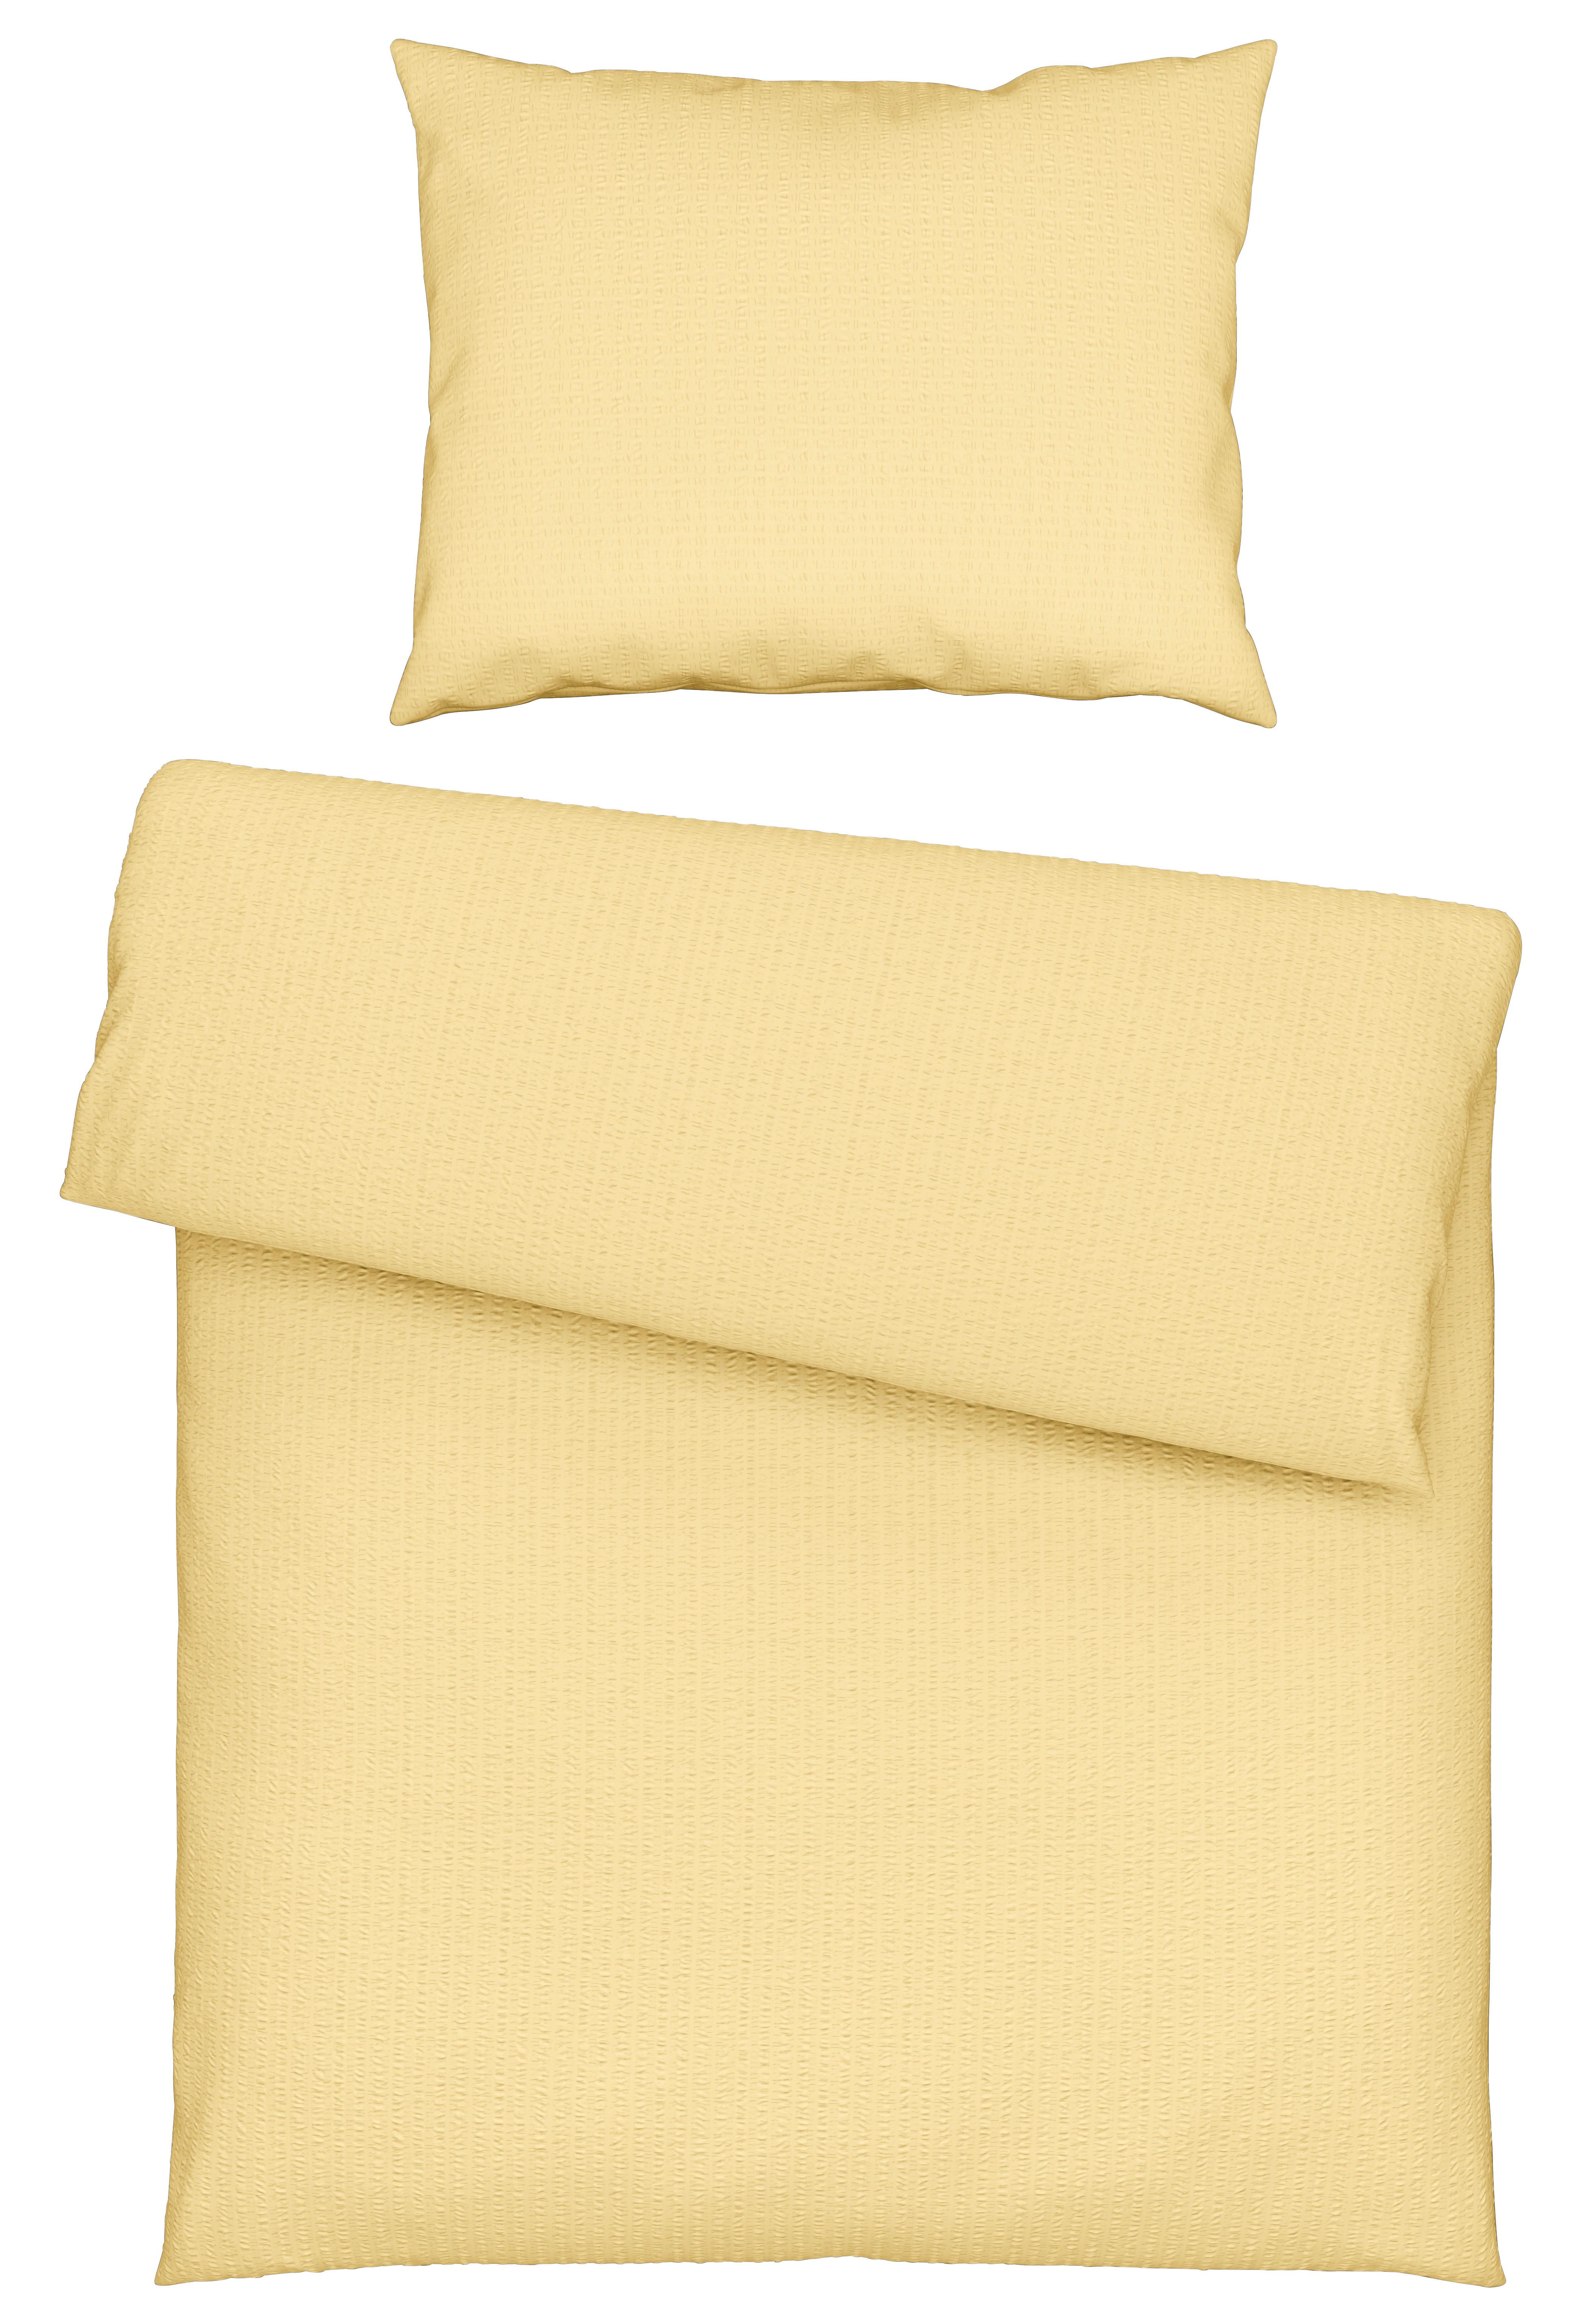 Posteľná Bielizeň Gisi, 140/200cm, Žltá - žltá, Konvenčný, textil (140/200cm) - Modern Living